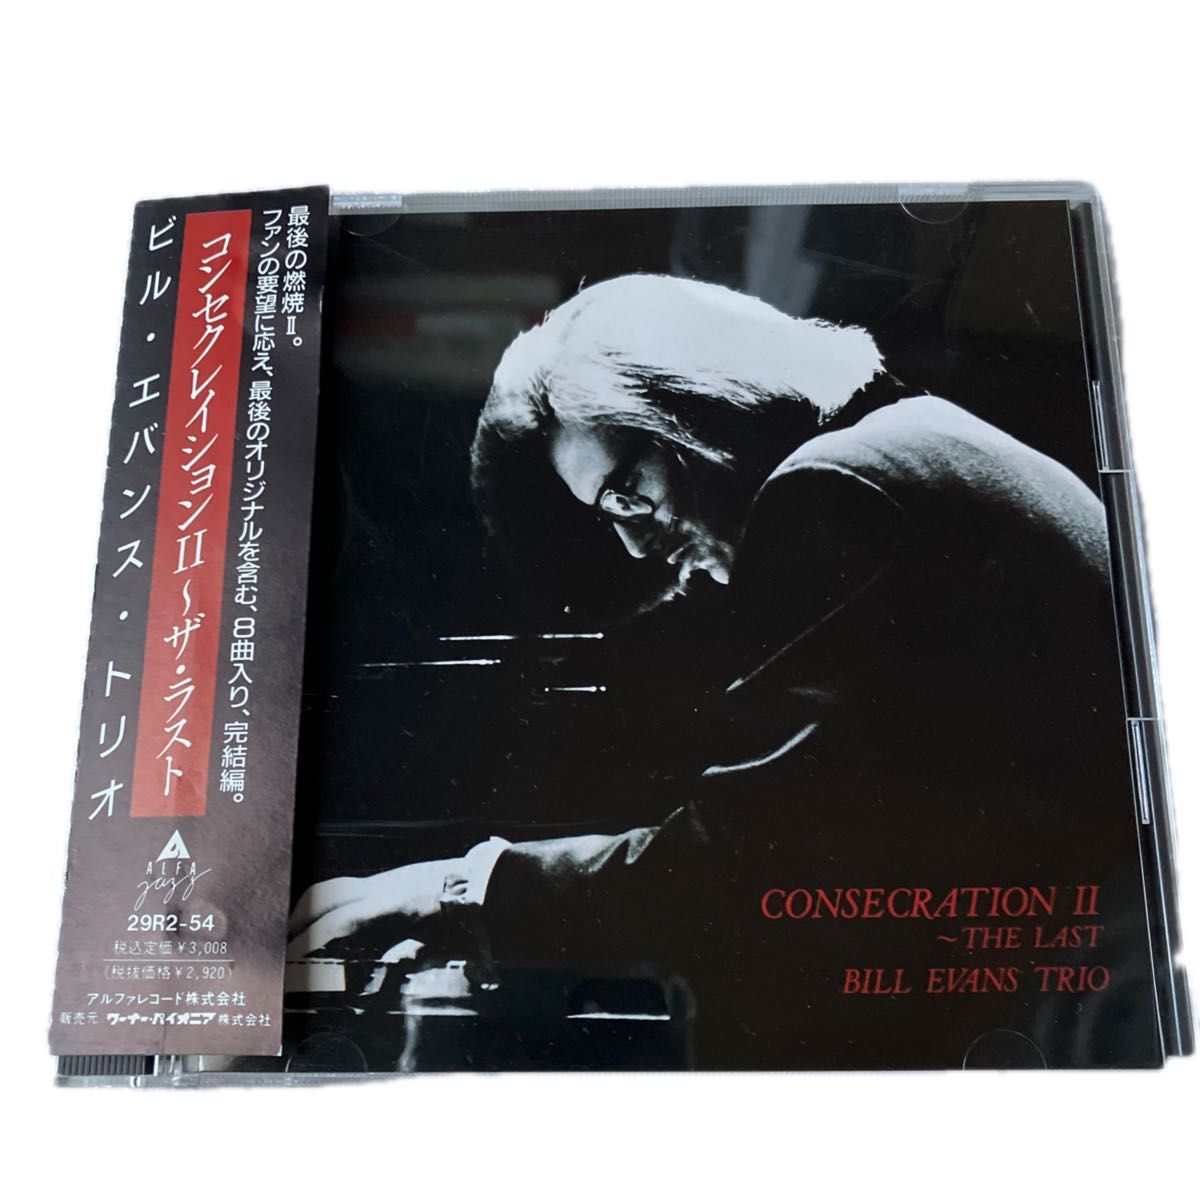 Bill Evans Trio/CONSECRATION II -the last CD